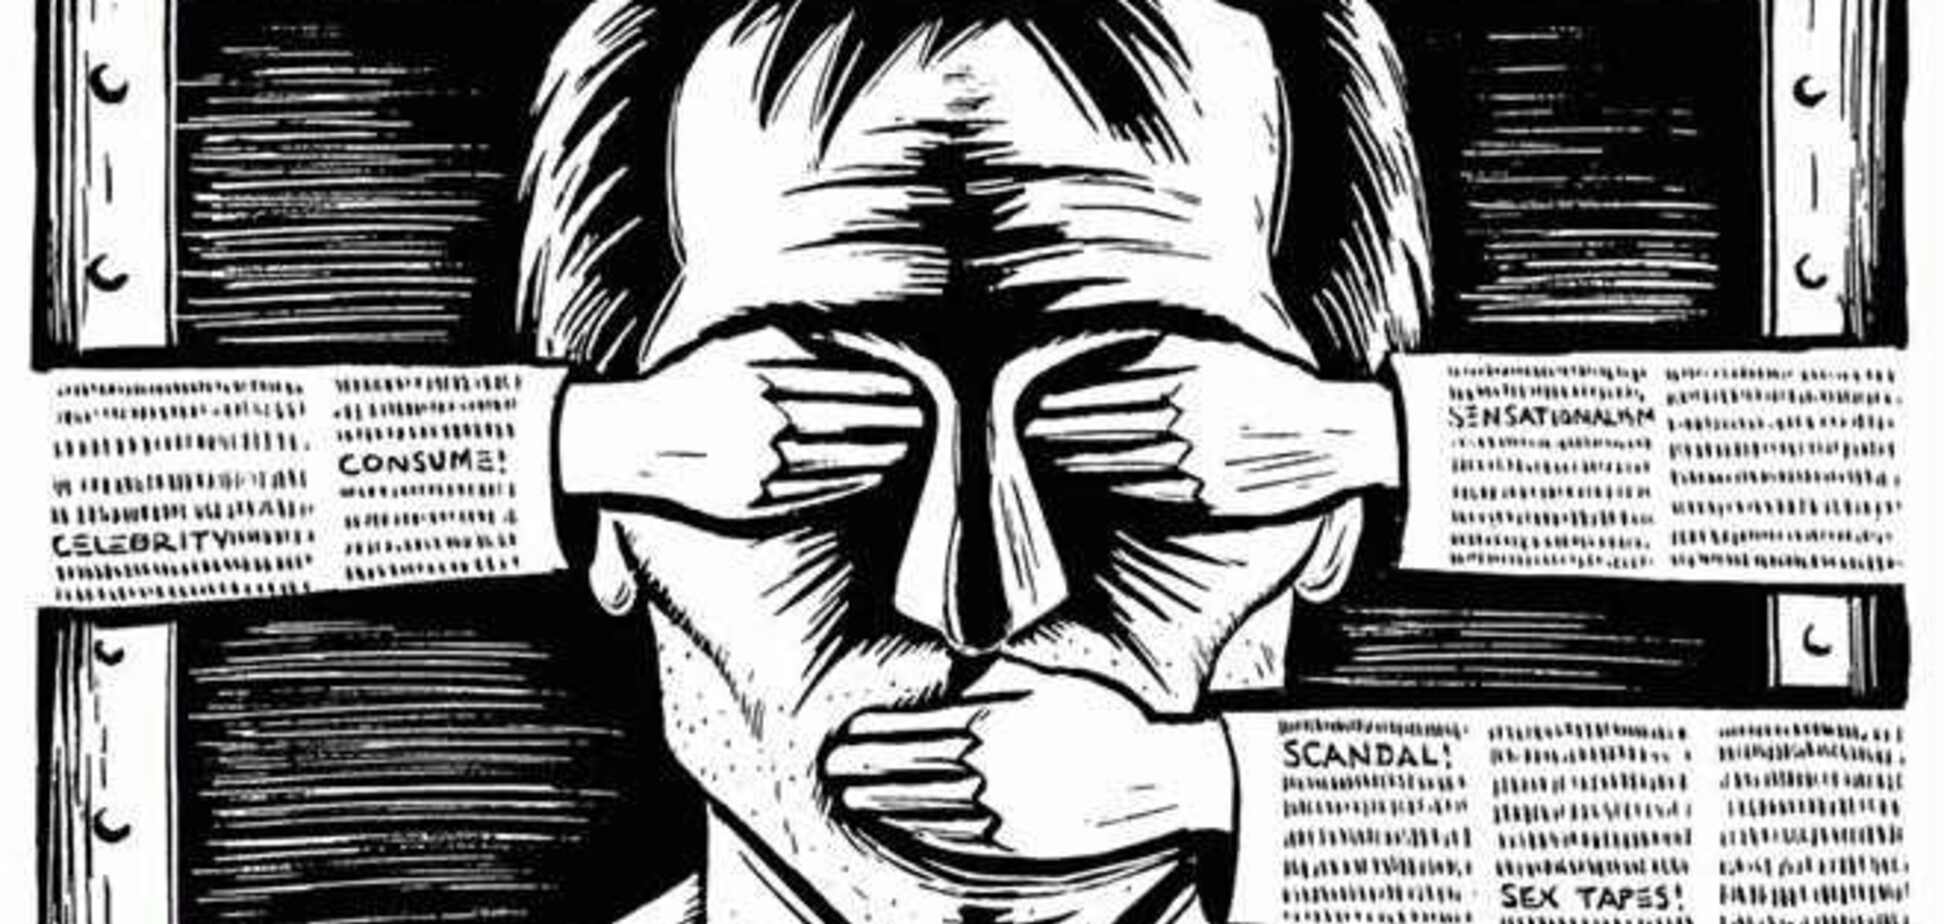 РФ заблокировала независимые СМИ накануне референдума в Крыму - Amnesty International